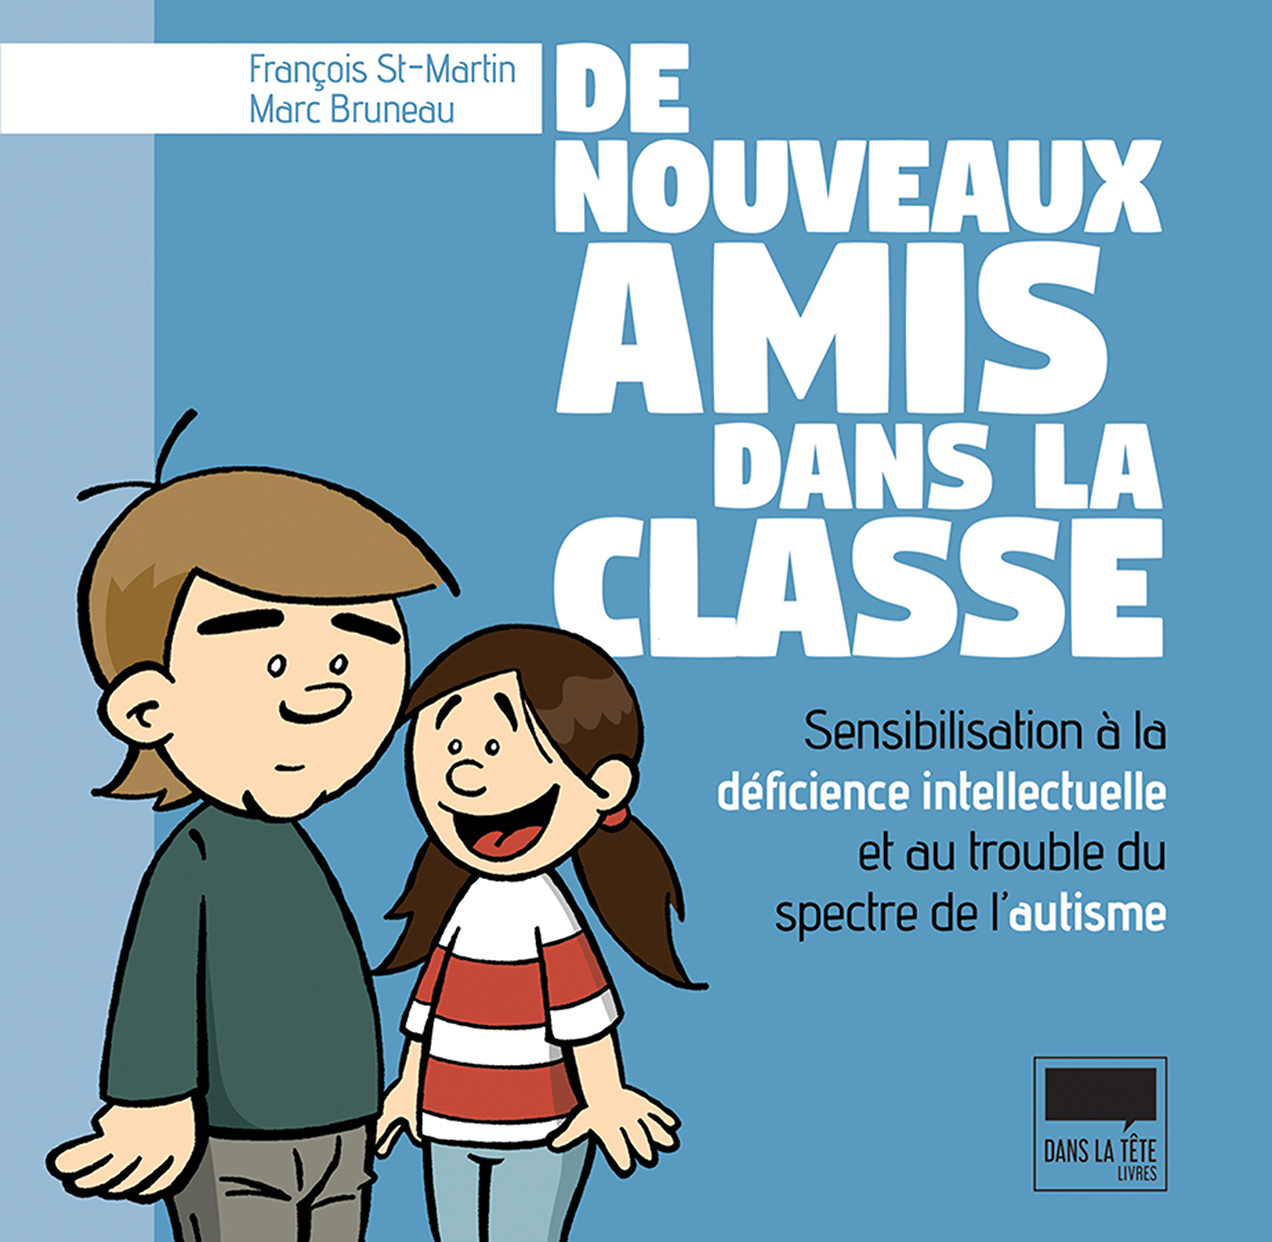 Couverture de "De nouveaux amis dans la classe" avec deux personnages dessinés.